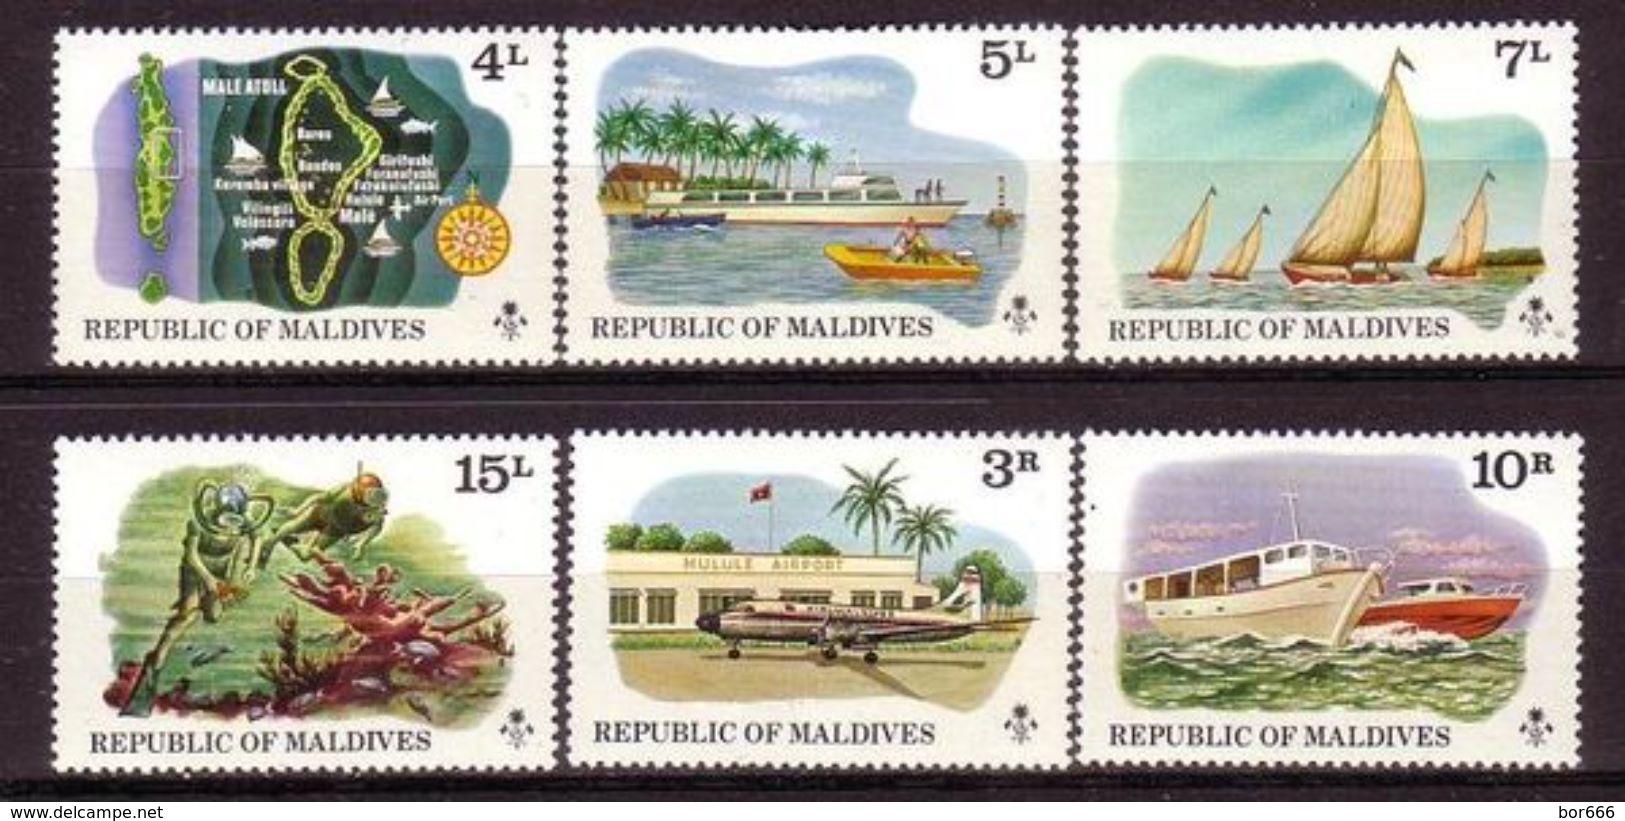 Maldives - TRANSPORT / TOURISM 1975 MNH - Maldives (1965-...)